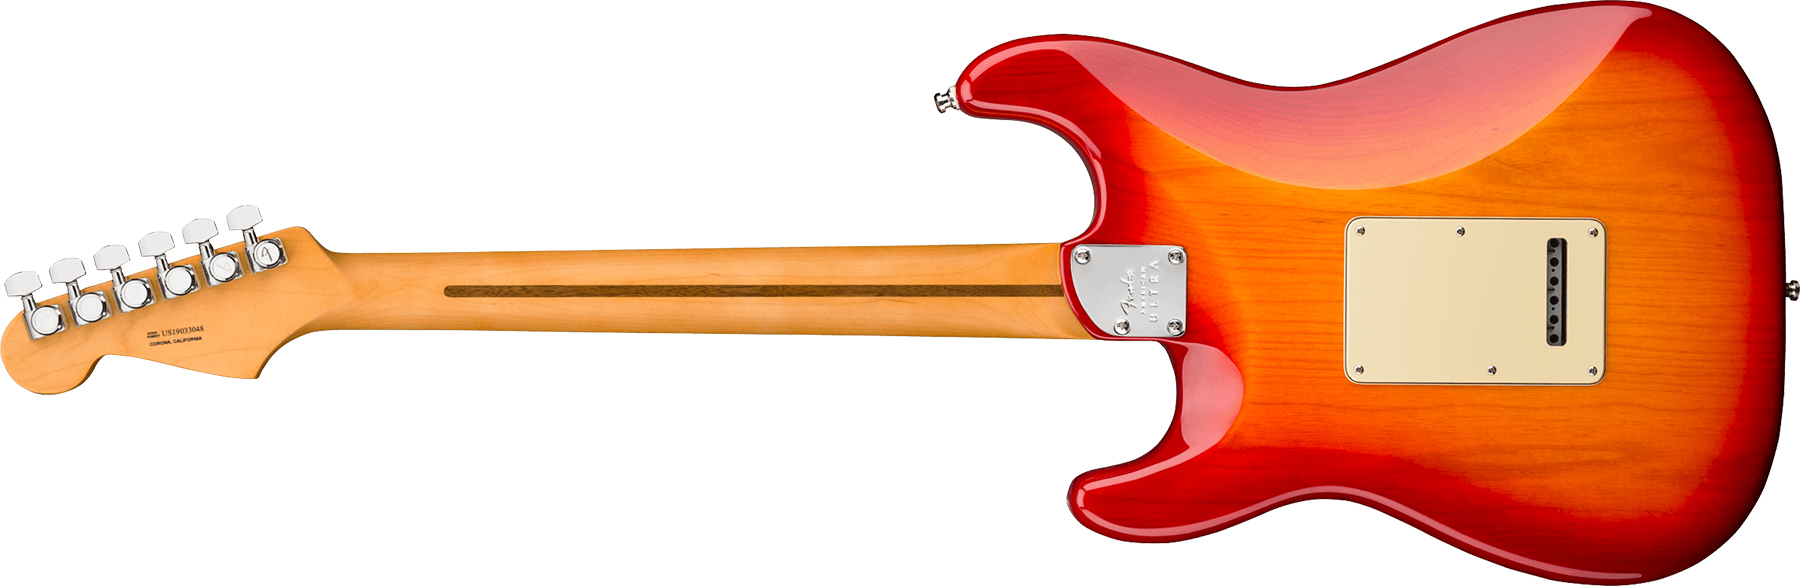 Fender Strat American Ultra 2019 Usa Rw - Plasma Red Burst - Guitare Électrique Forme Str - Variation 1